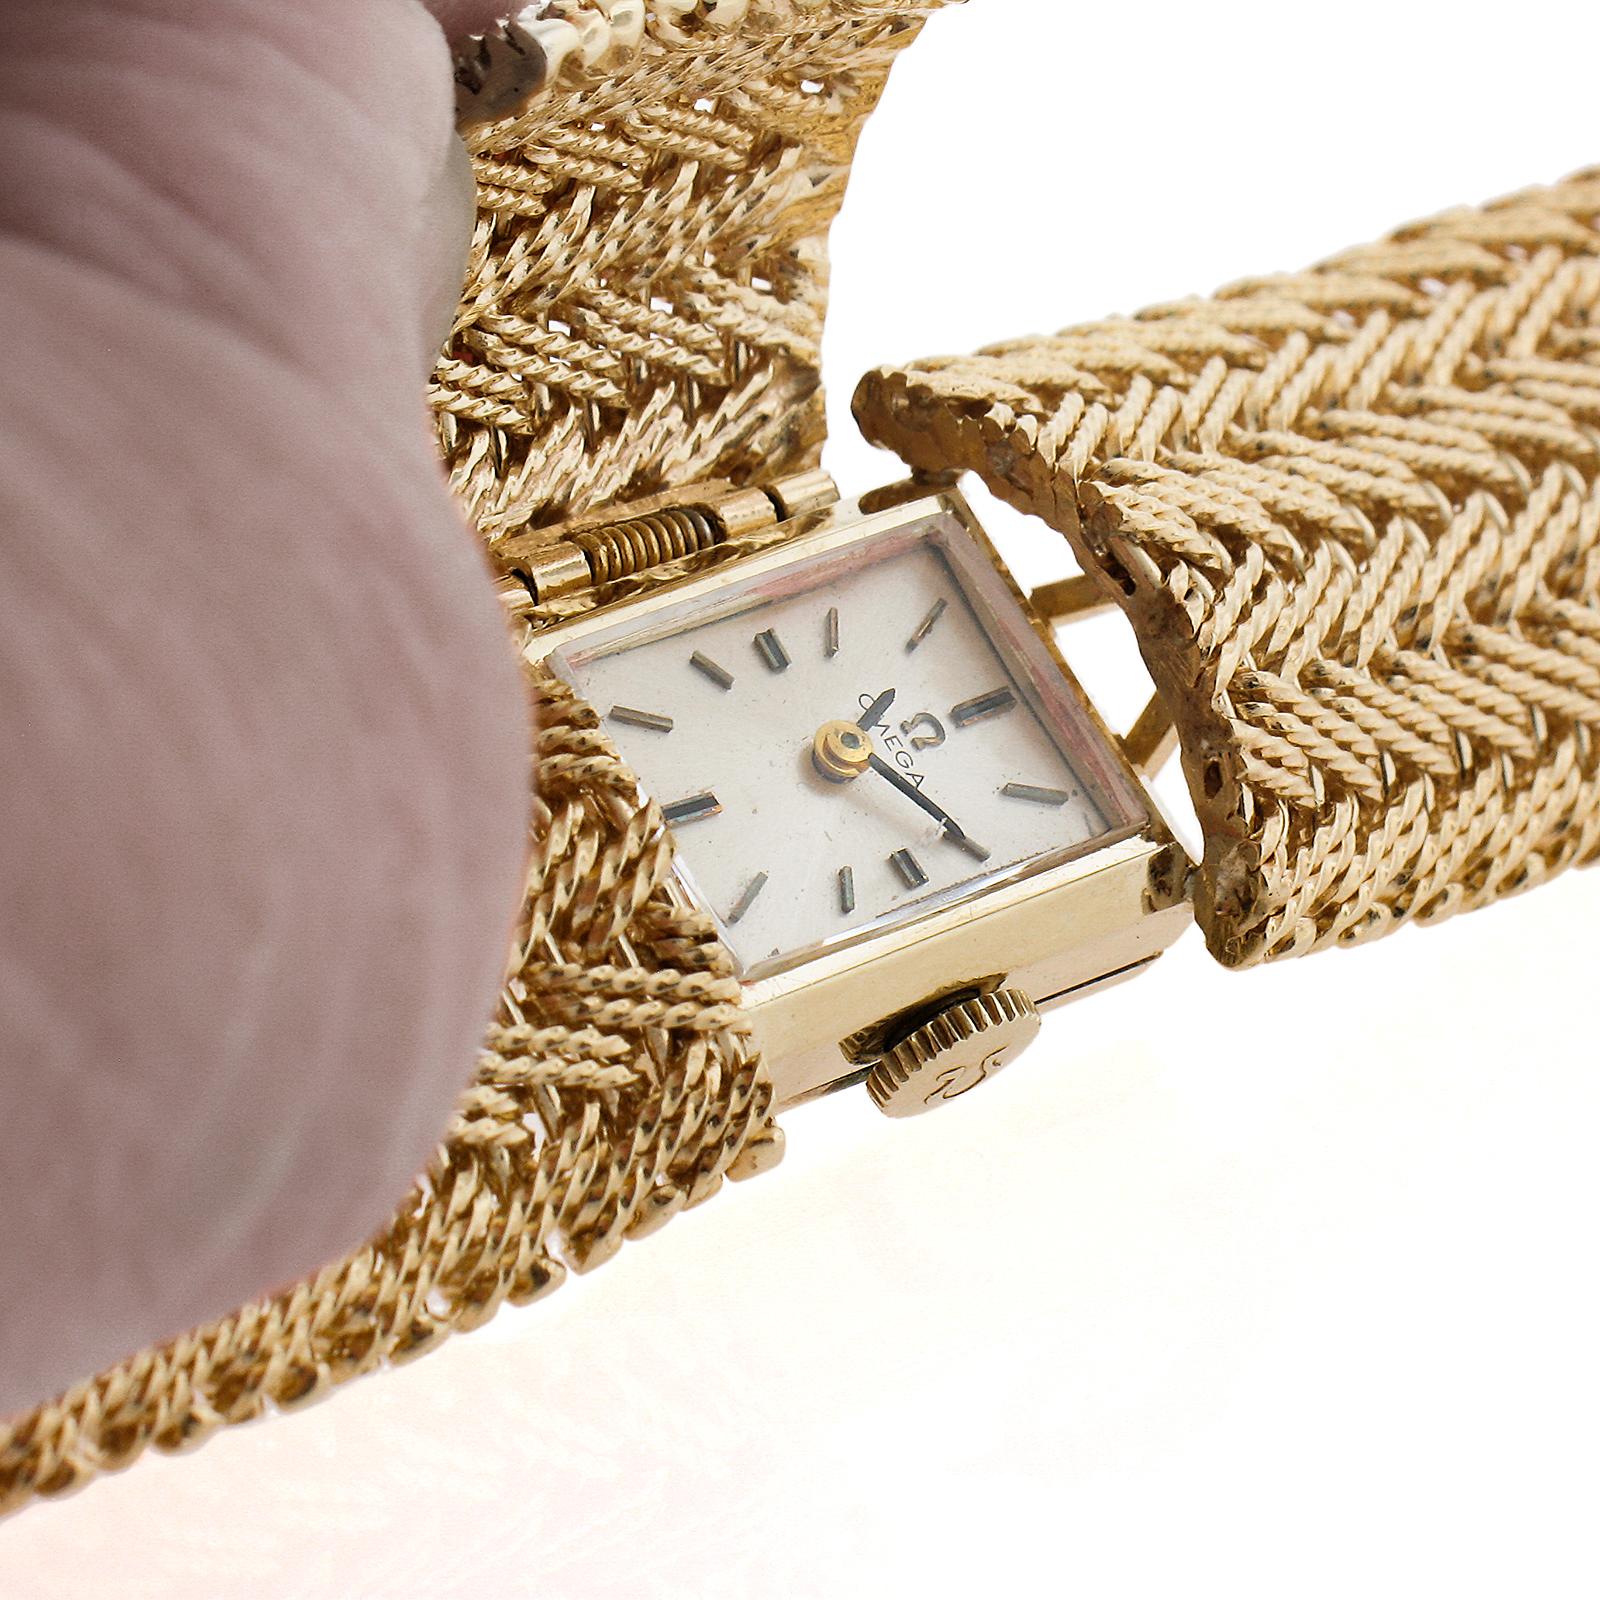 Uhrmacher: Omega
Uhrwerk: Mechanisch - 17 Jewels - Kal. 483
Gehäuse, Lünette und Armband MATERIAL: Massiv 14k Gelbgold
Gewicht: 59,7 Gramm
Breite: 19mm (Armband & Gehäuse)
Länge des Armbands: Passt bis zu einem 6.5-Zoll-Handgelenk.  
Zustand: